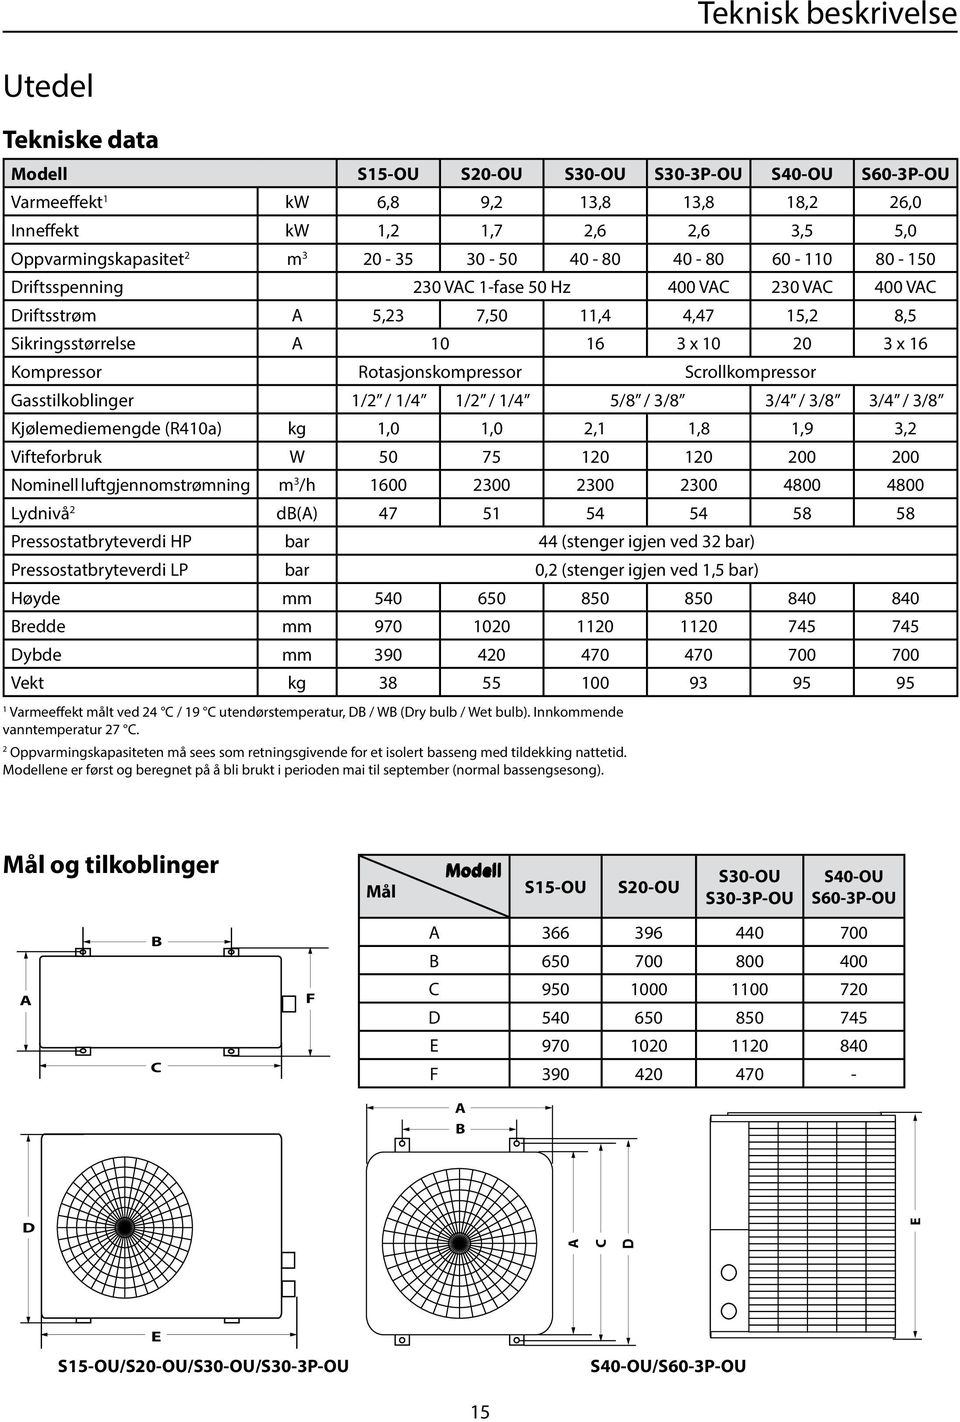 Kompressor Rotasjonskompressor Scrollkompressor Gasstilkoblinger 1/2 / 1/4 1/2 / 1/4 5/8 / 3/8 3/4 / 3/8 3/4 / 3/8 Kjølemediemengde (R410a) kg 1,0 1,0 2,1 1,8 1,9 3,2 Vifteforbruk W 50 75 120 120 200